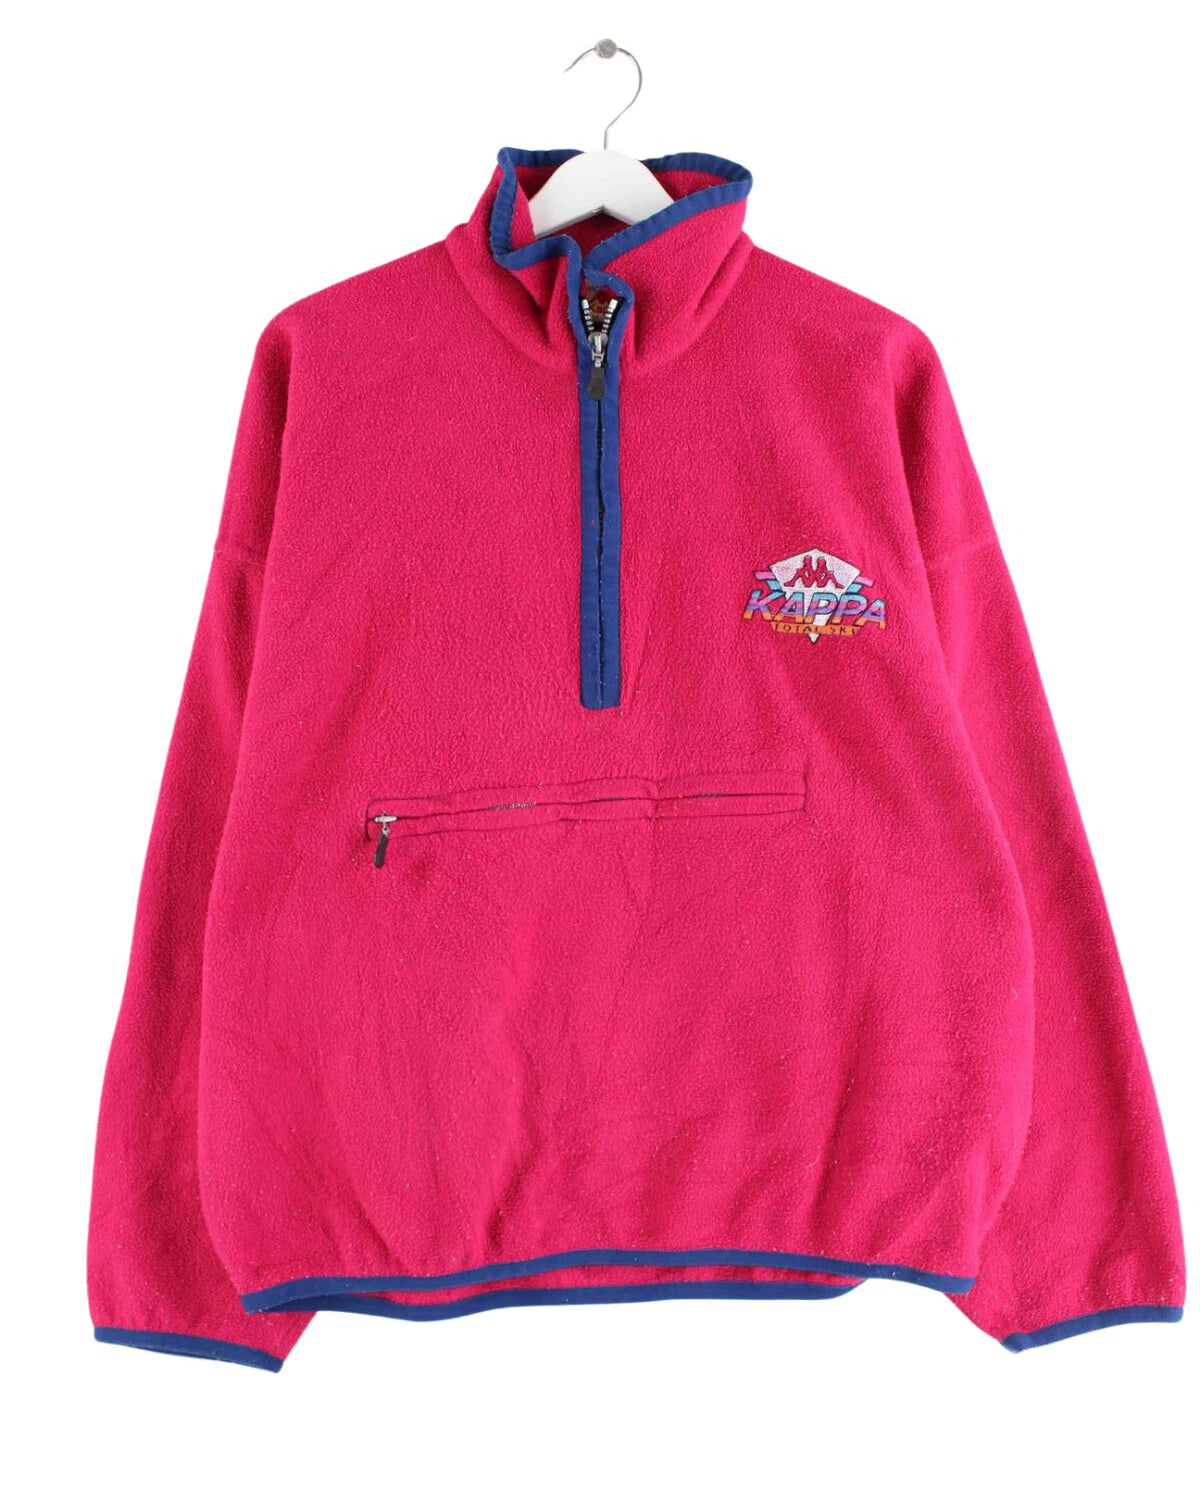 Kappa 80s Vintage Half Zip Fleece Sweater Pink M (front image)